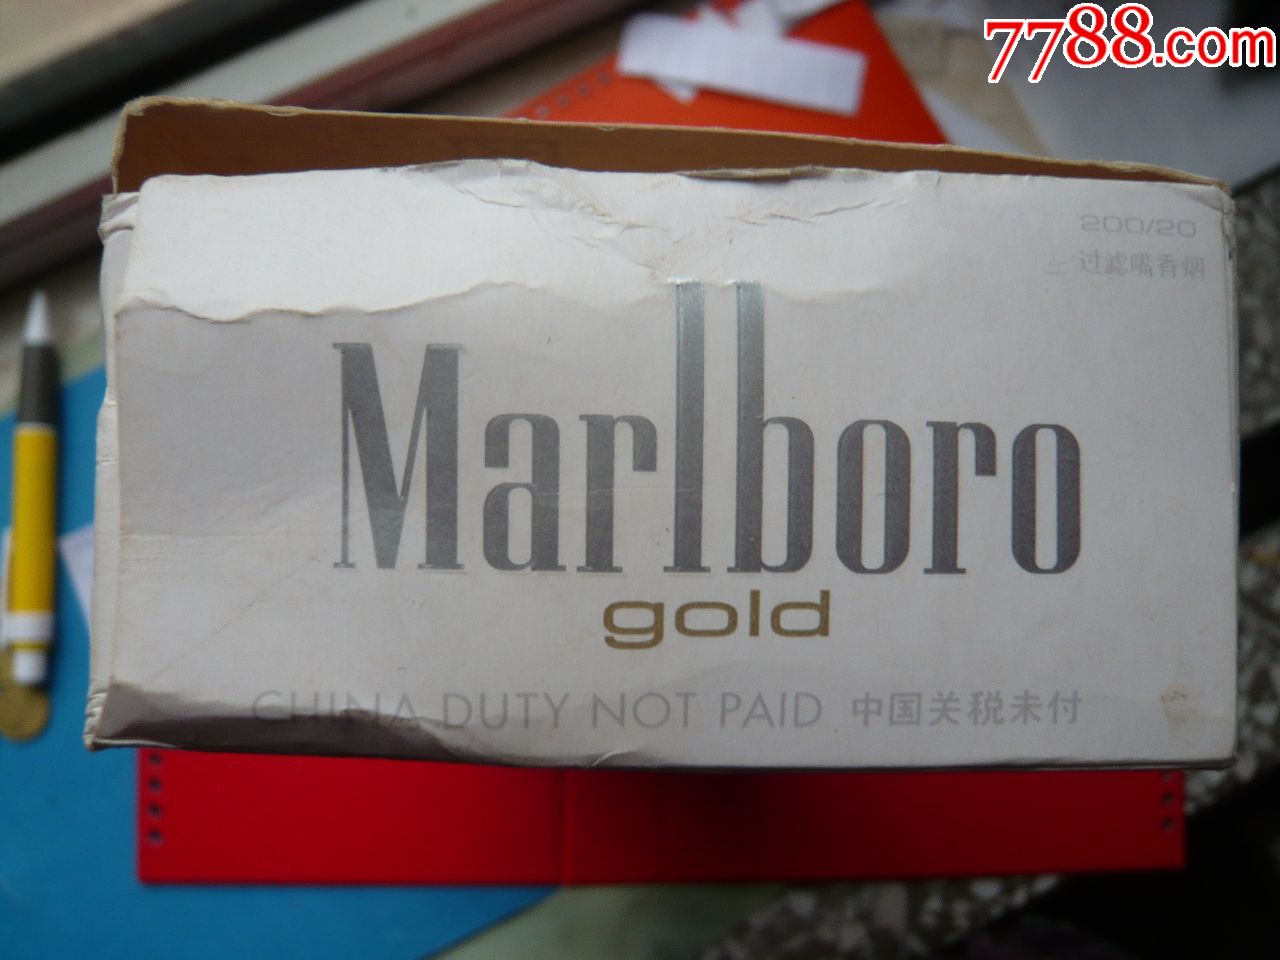 条盒烟标:marlboro·gold万宝路·金,微烟味设计,瑞士出品,含9只空盒